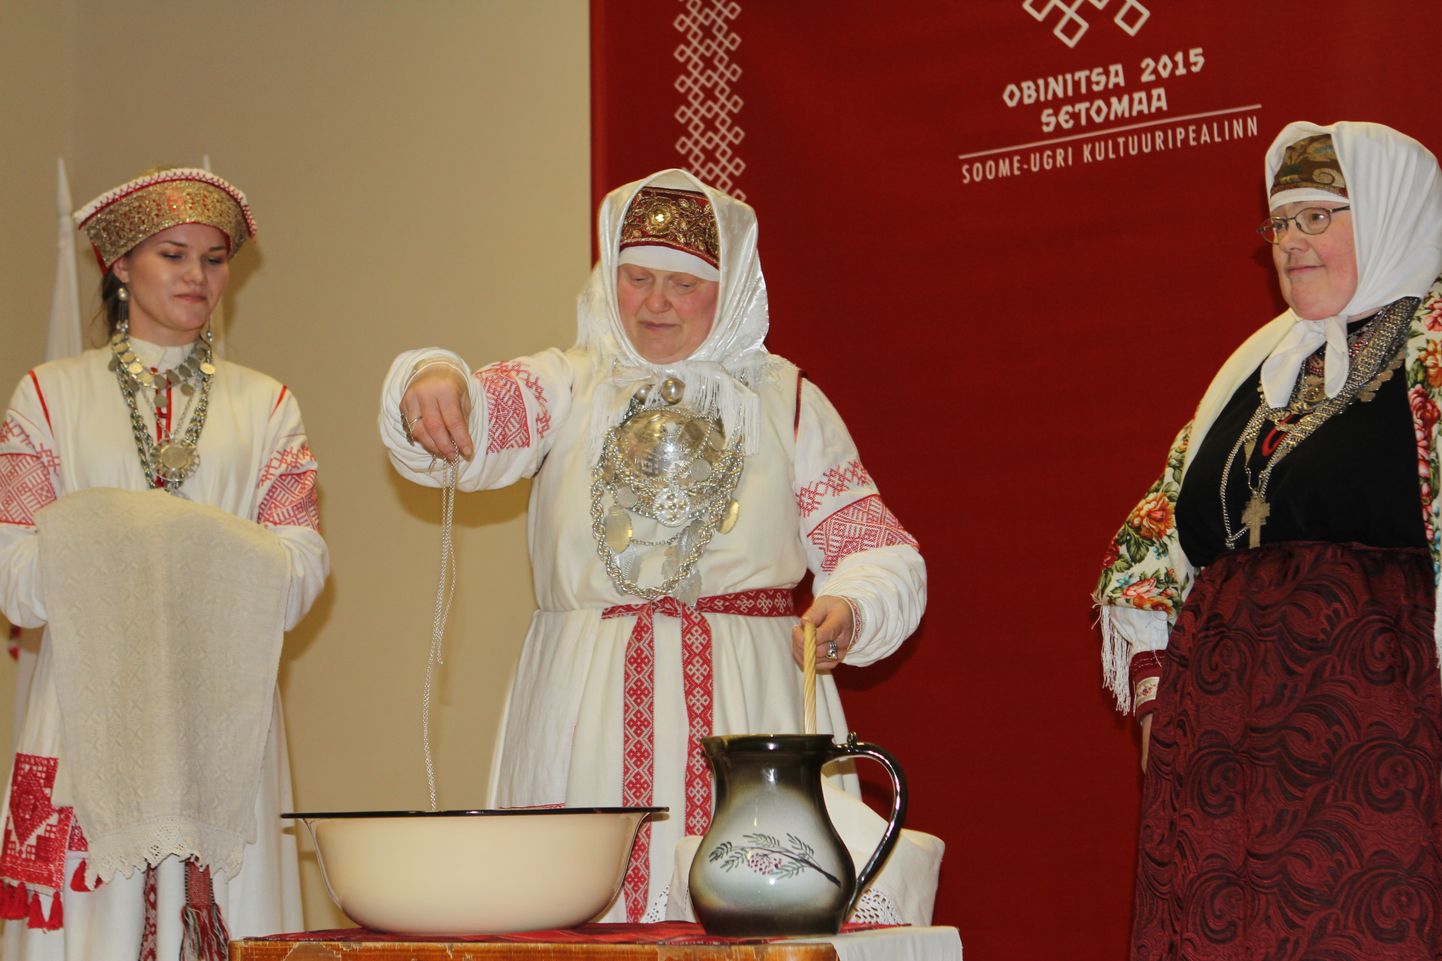 "Soome-ugri kultuuripealinn 2015 -  Setomaa, Obinitsa" avamispidustused talsipühadel Obinitsas